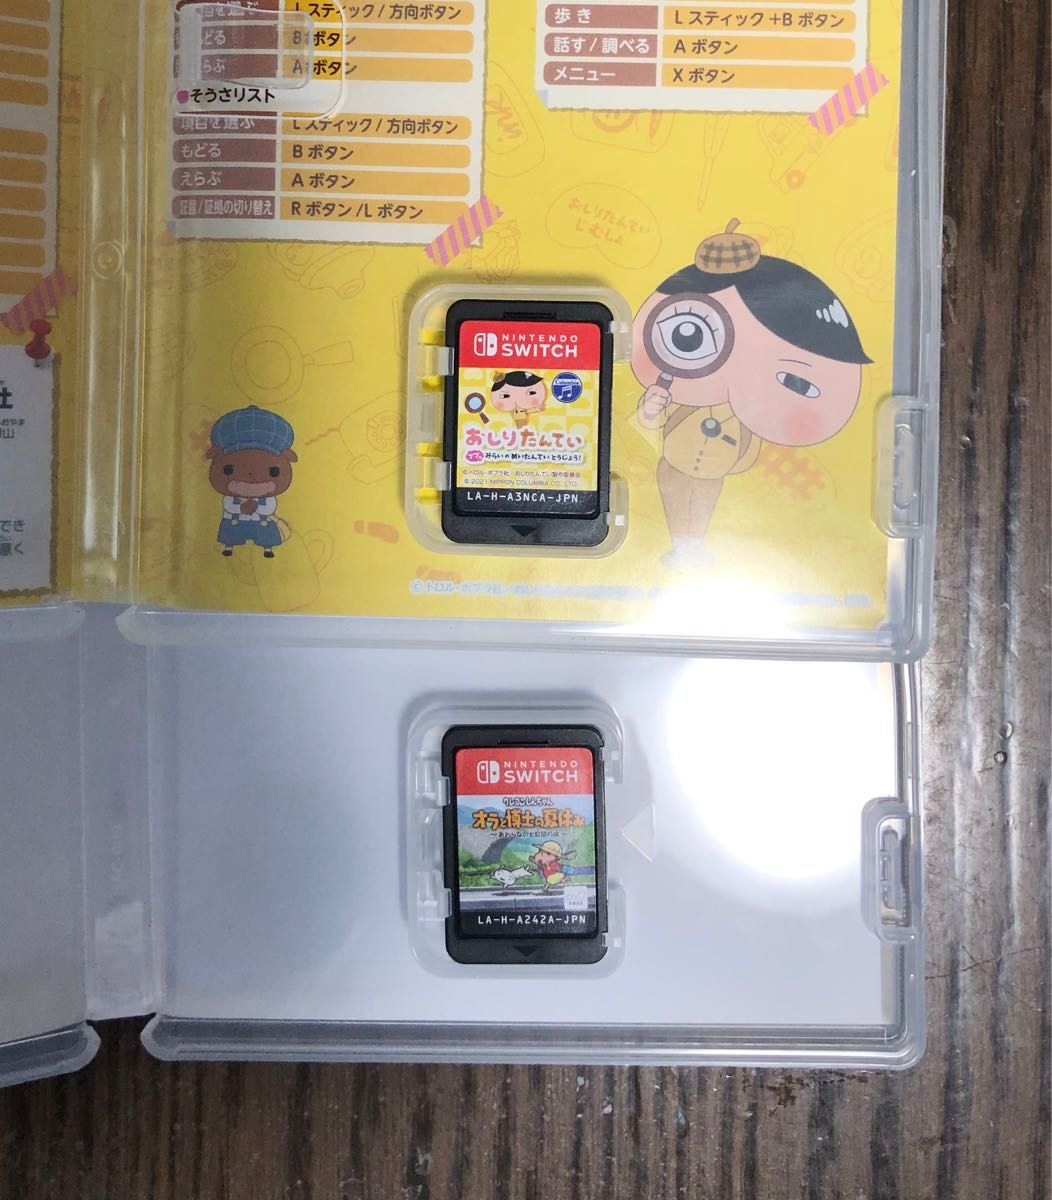 Nintendo Switch ソフト オラと博士の夏休み クレオンしんちゃん おしりたんてい みらいのめいたんていとうじょう